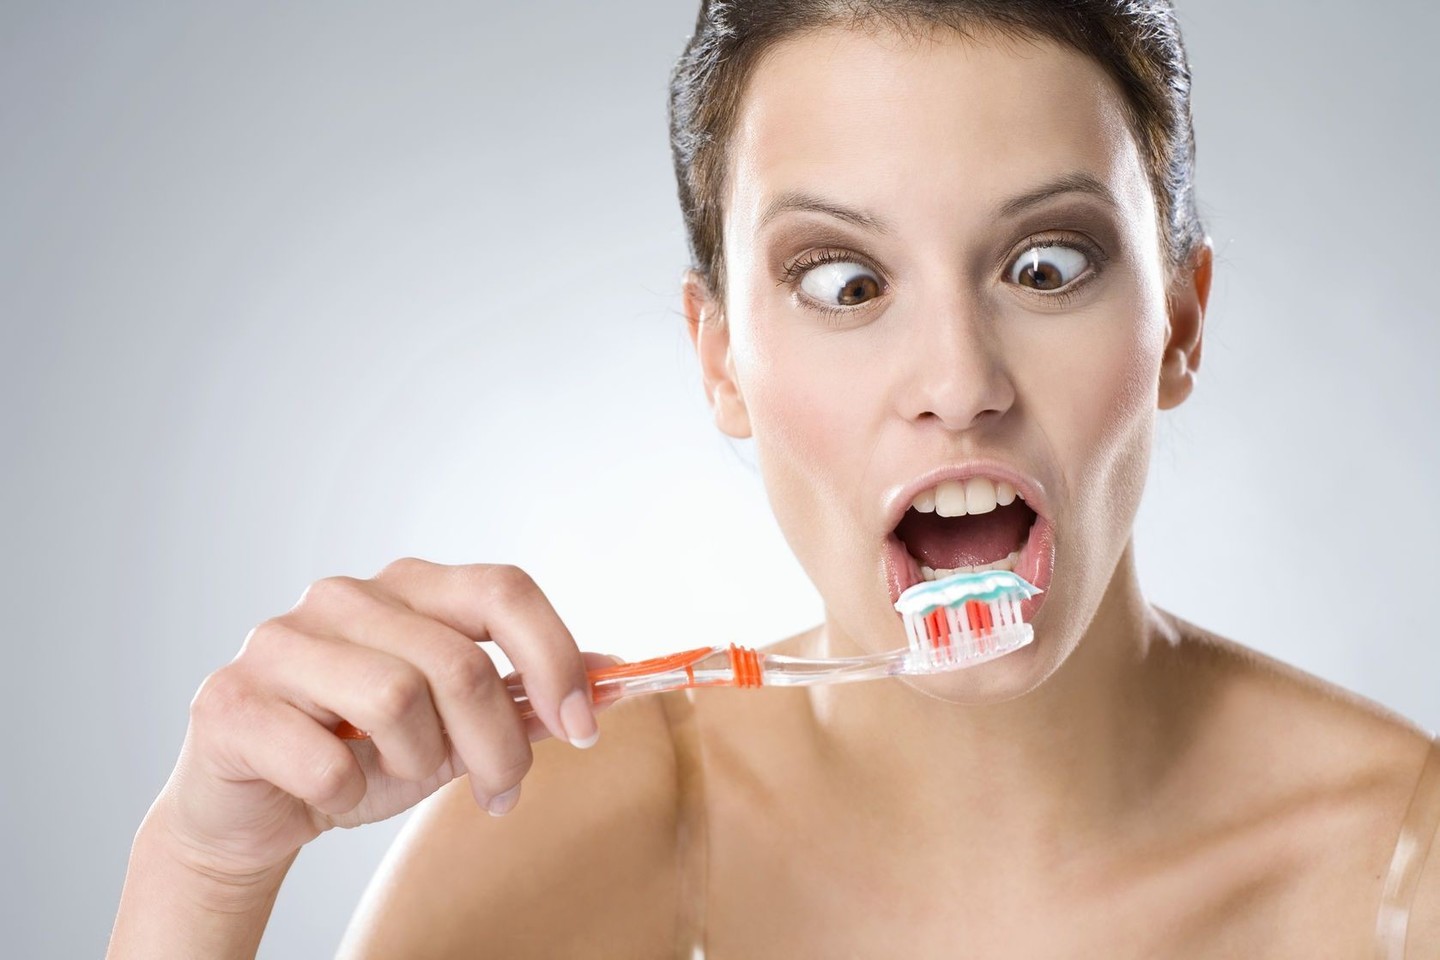 Britų odontologų asociacija mano, jog reikėtų naudoti geros reputacijos firmos dantų pastą, kurioje yra fluoro.<br>123rf nuotr.